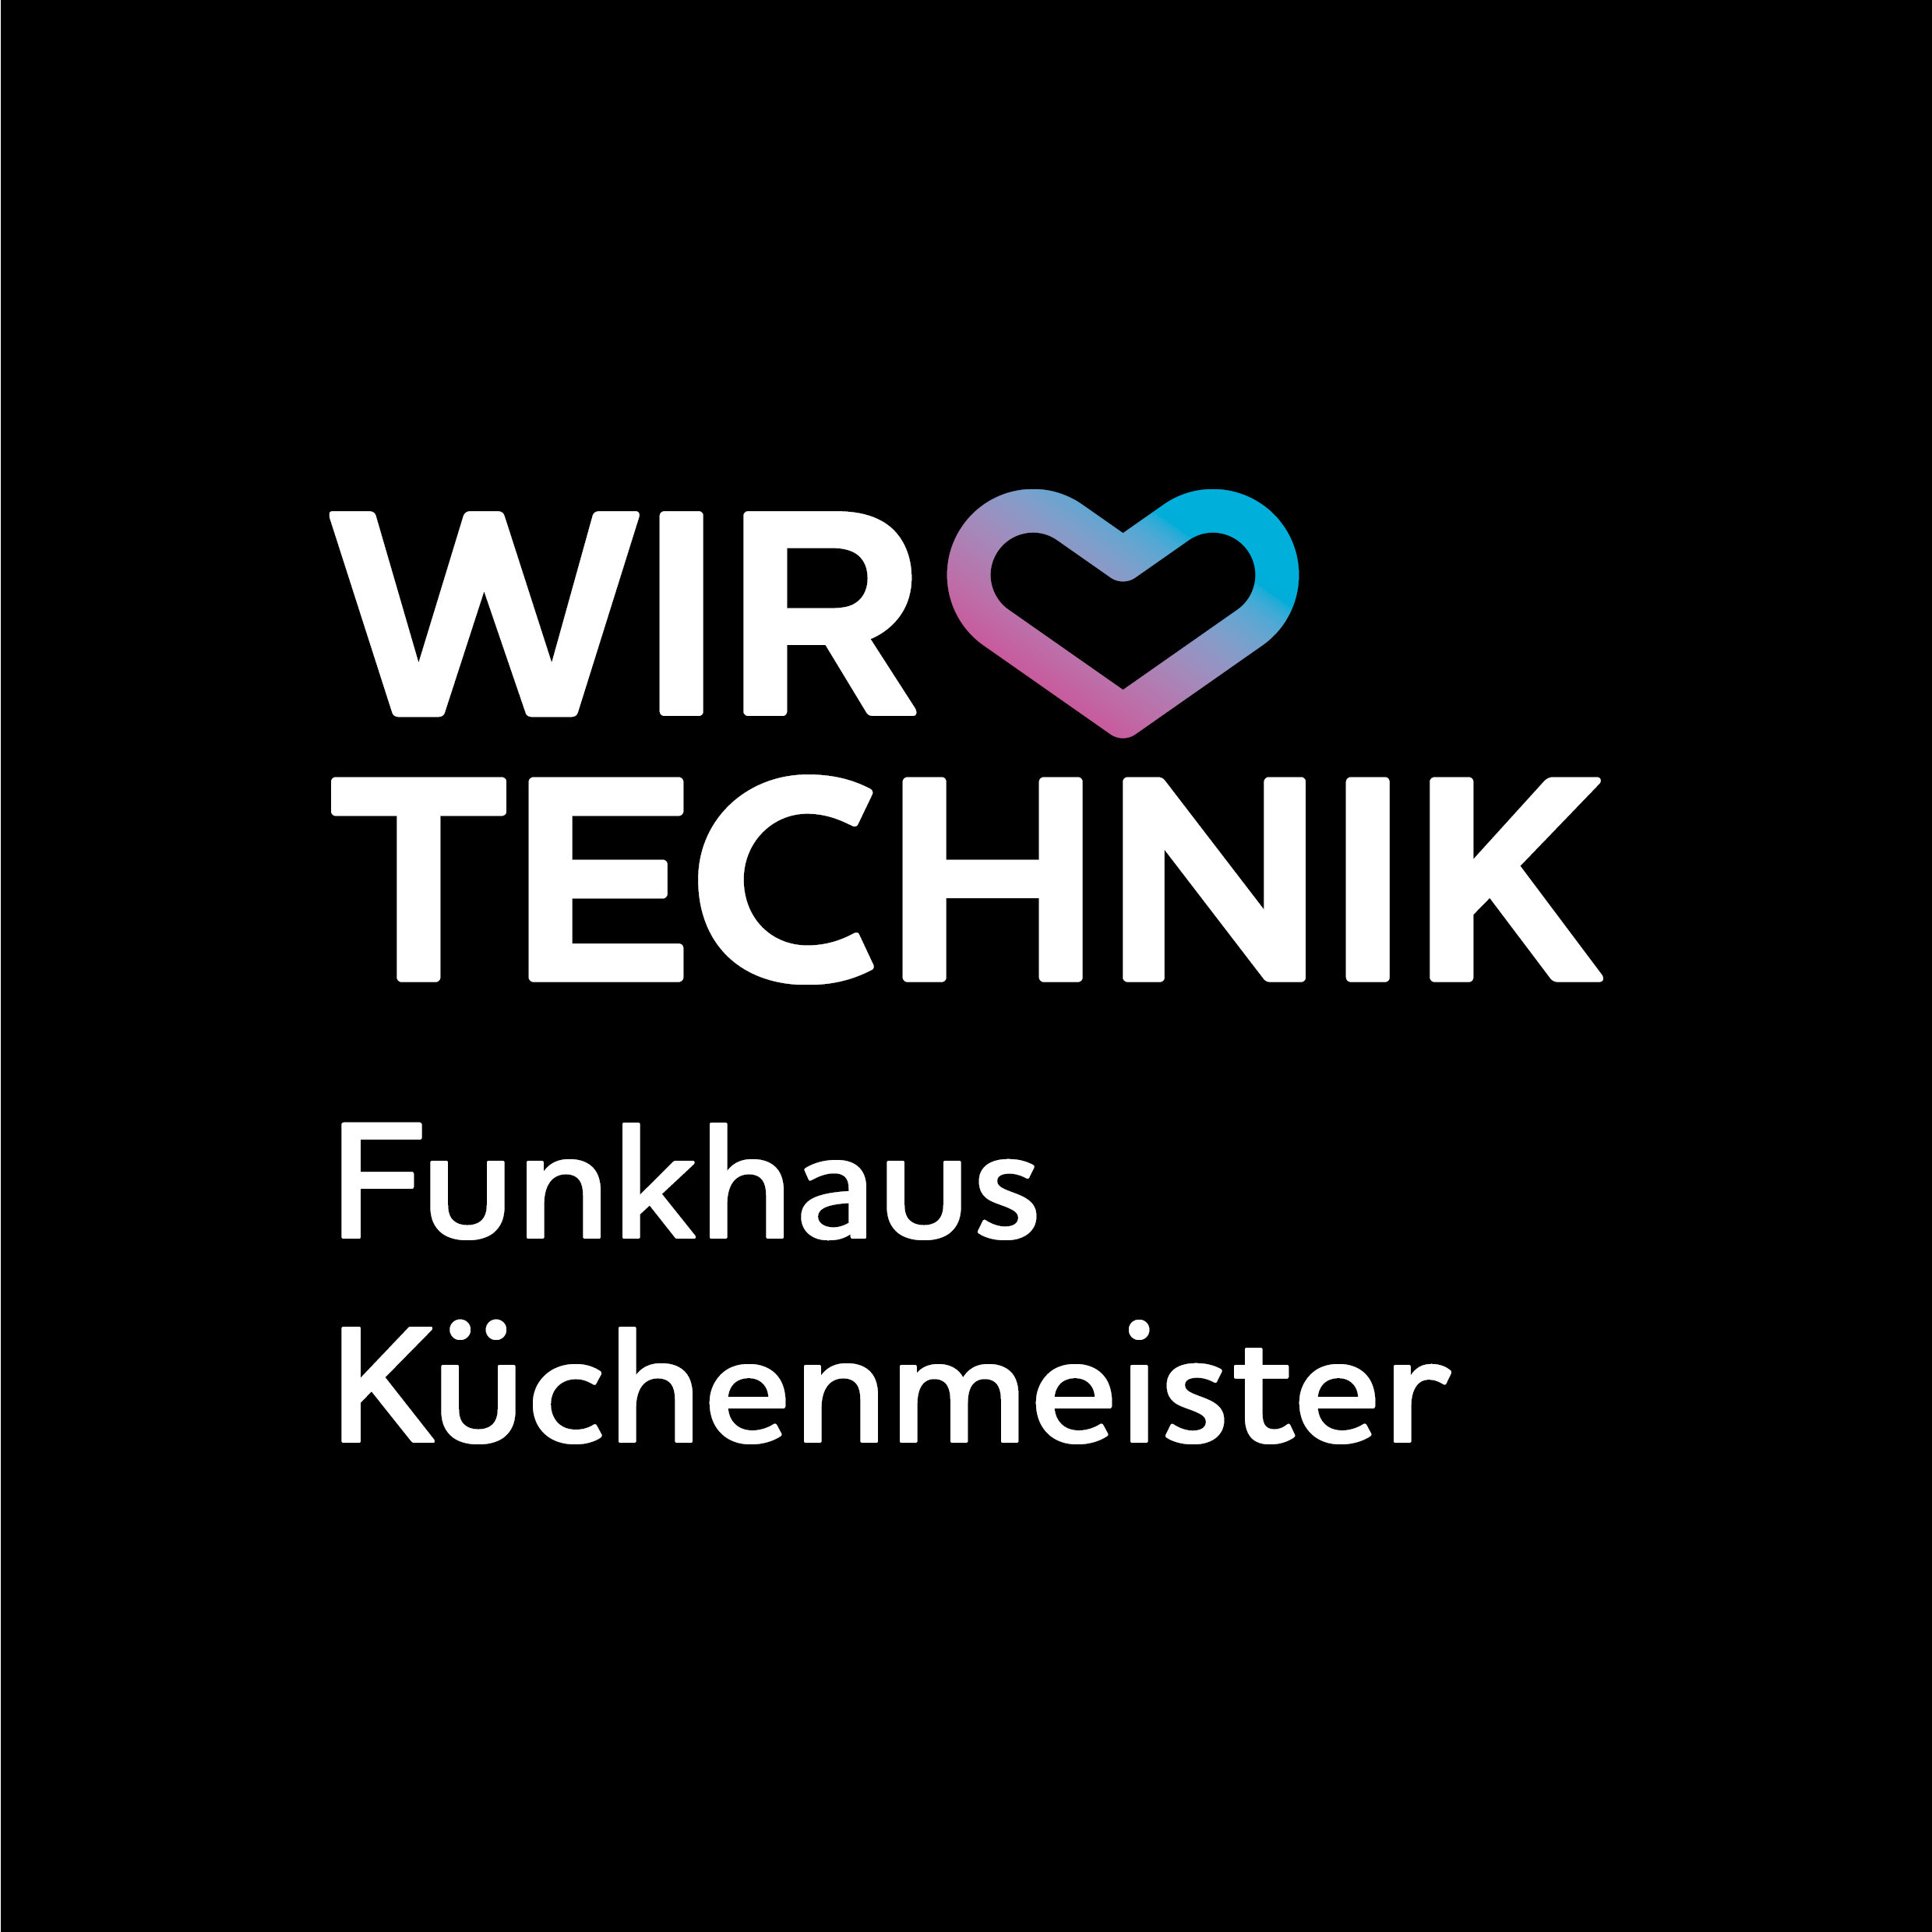 Wir lieben Technik Funkhaus Küchenmeister in Schwerin in Mecklenburg - Logo